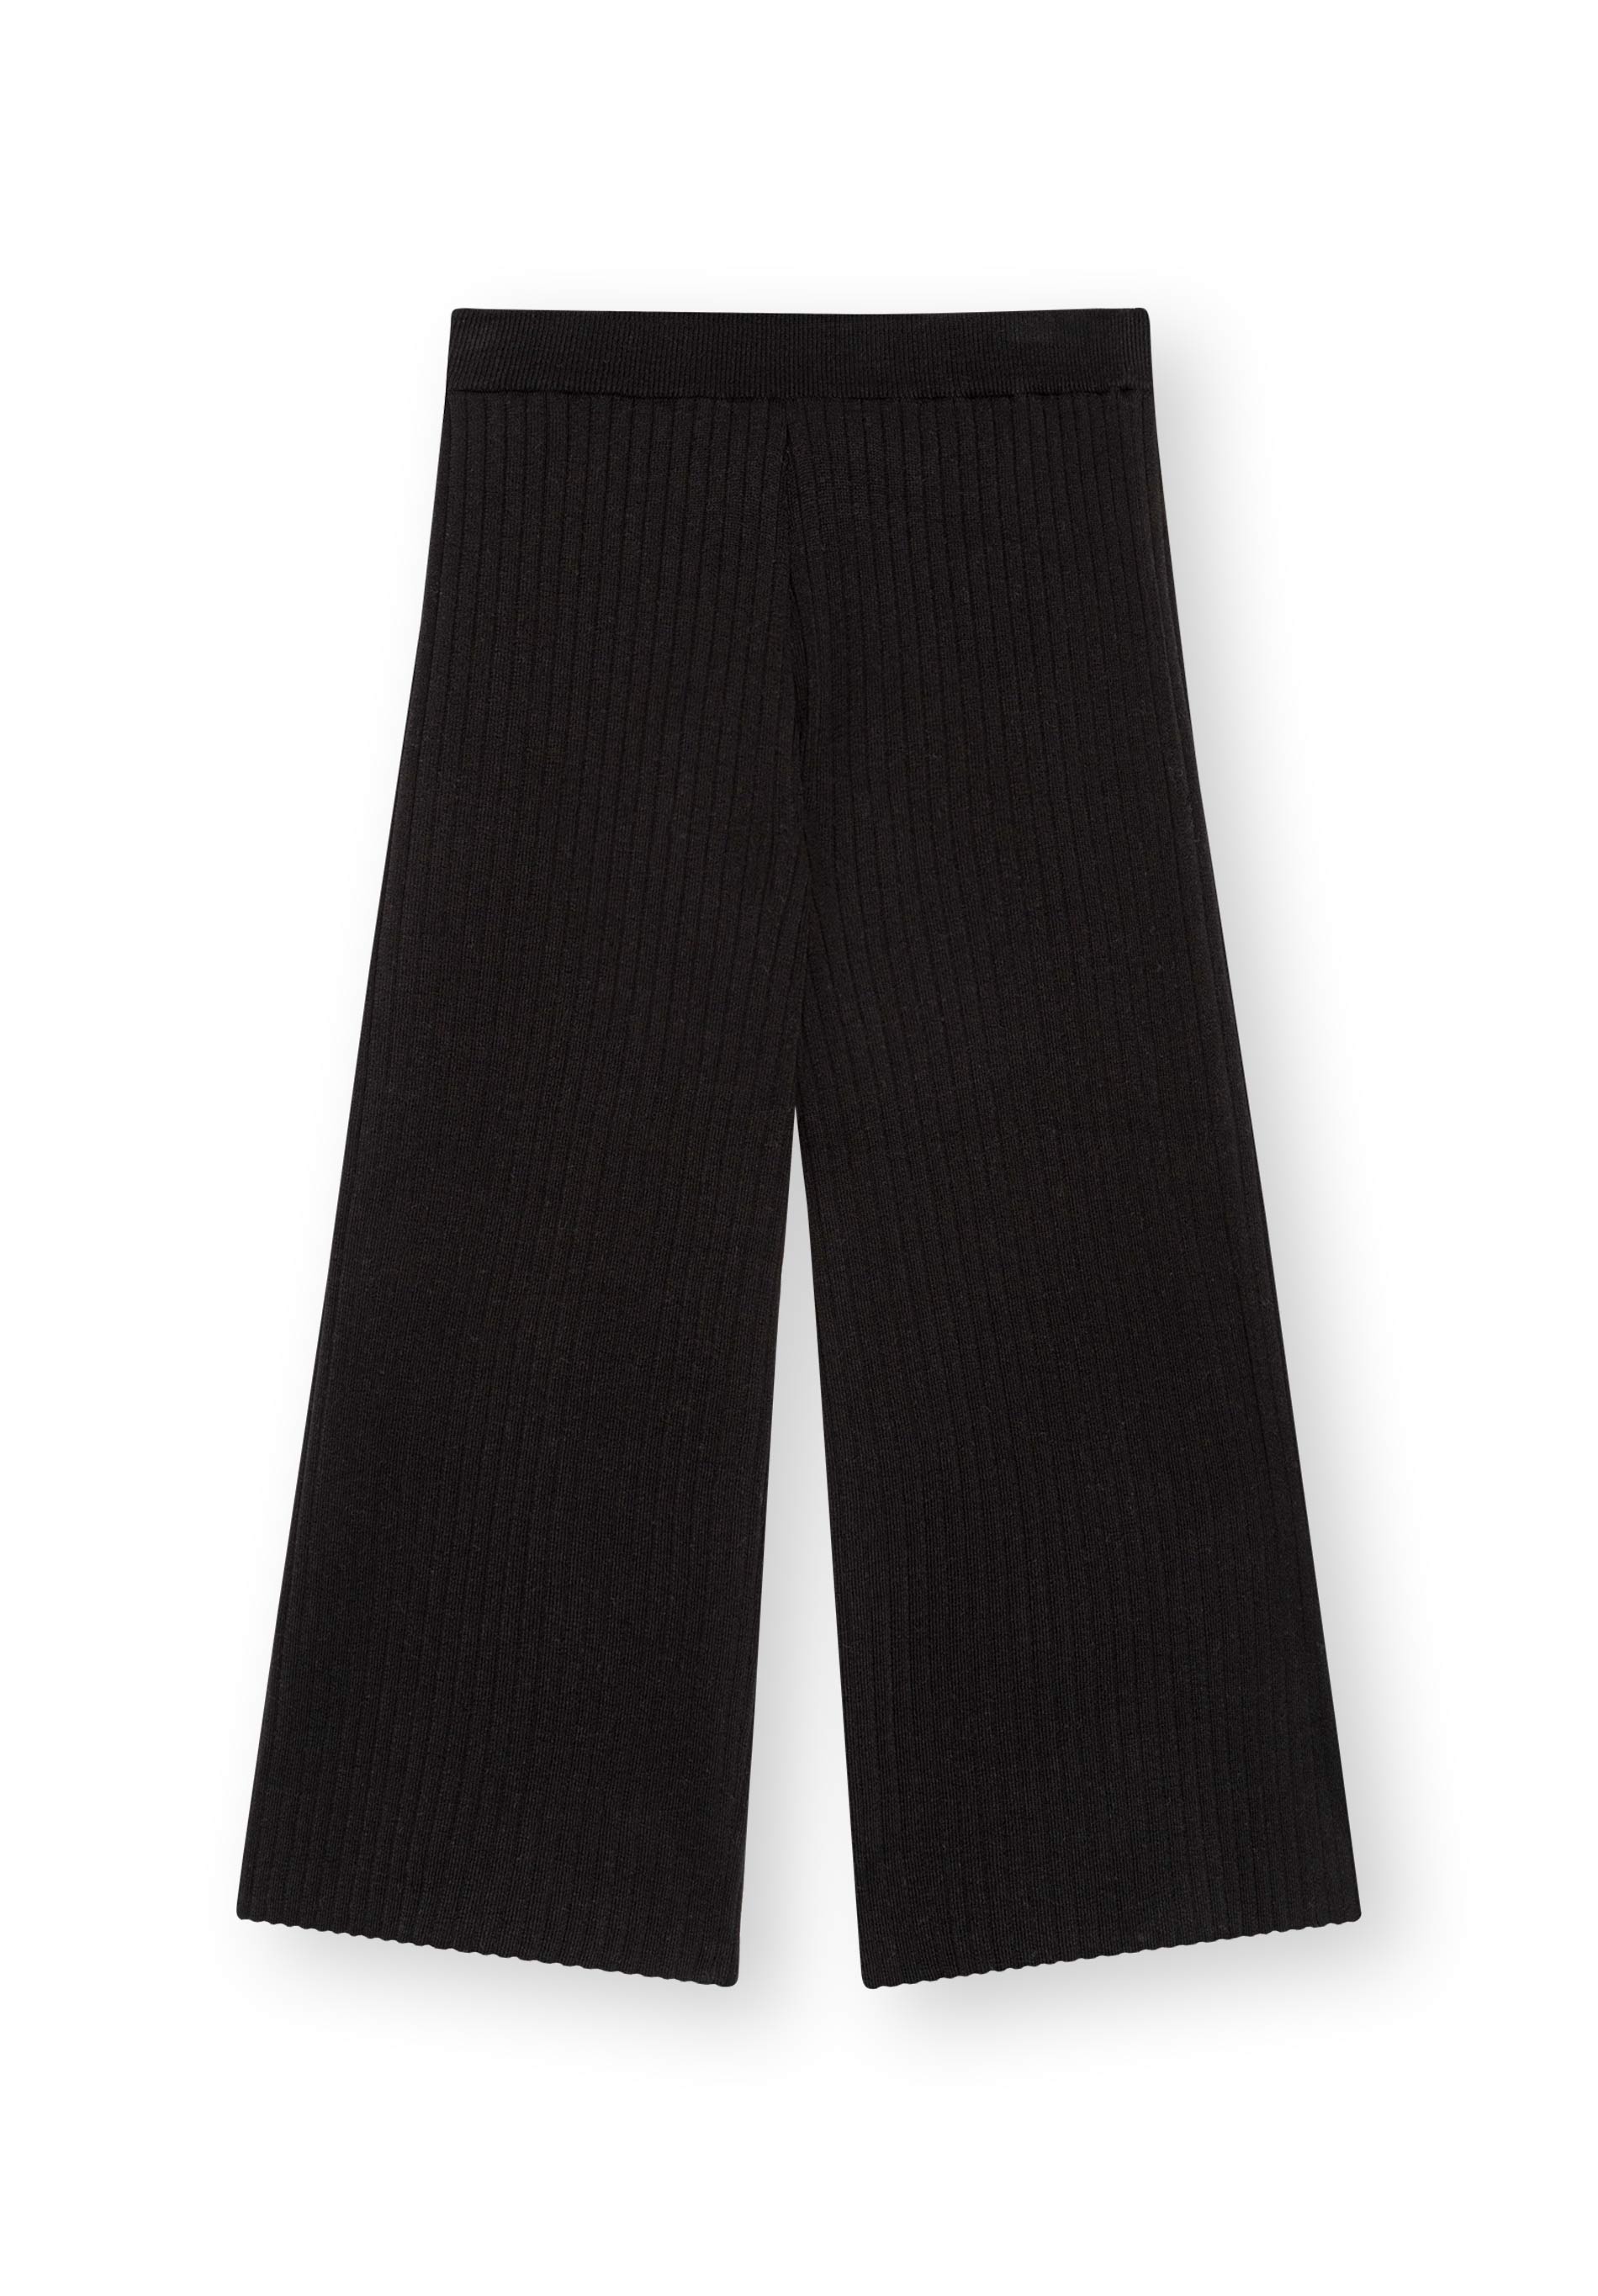 Hose CLAIRIE in Culotte-Form in schwarz von LOVJOI aus Bio-Baumwolle